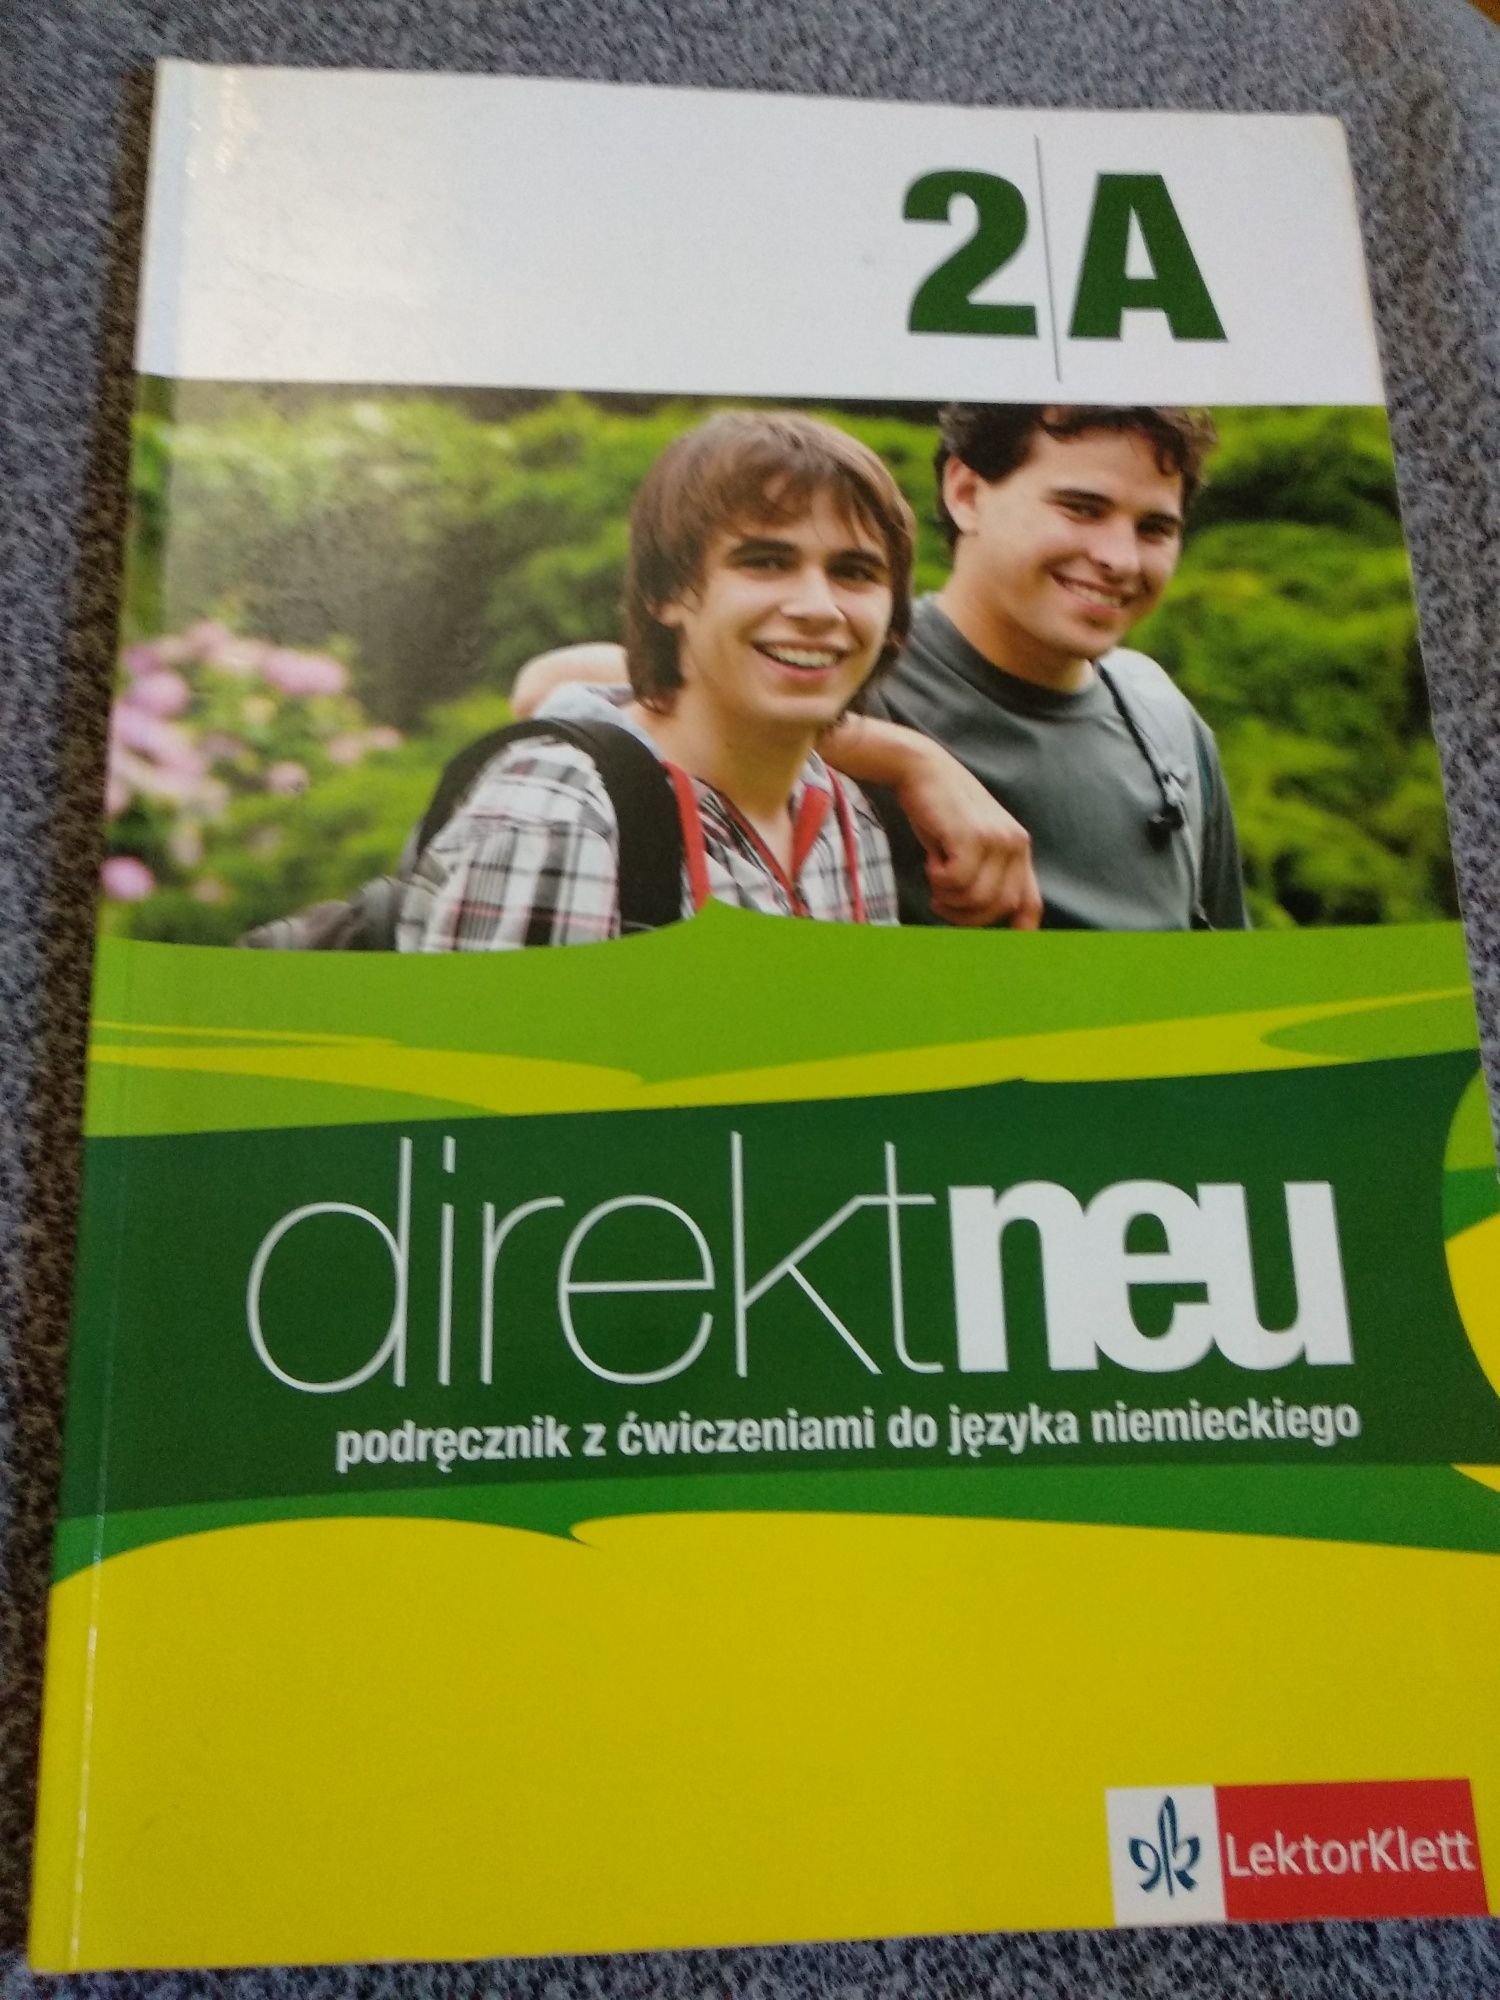 Direct neu. Podręcznik z ćwiczeniami do języka niemieckiego